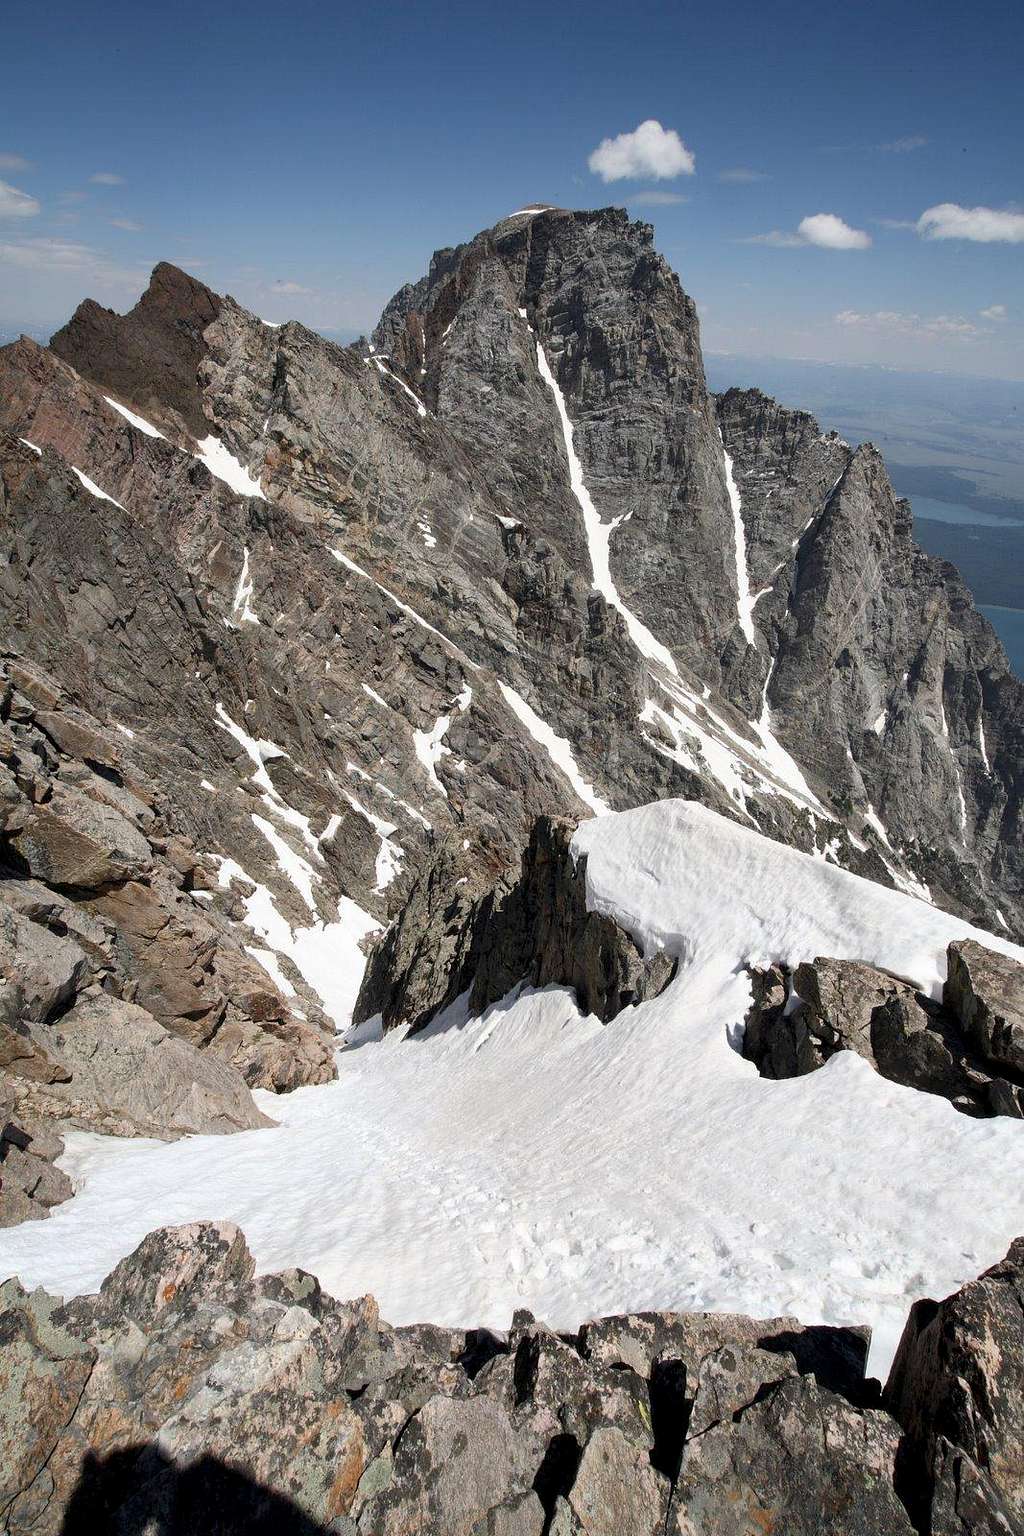 Mt. Moran from Thor Peak